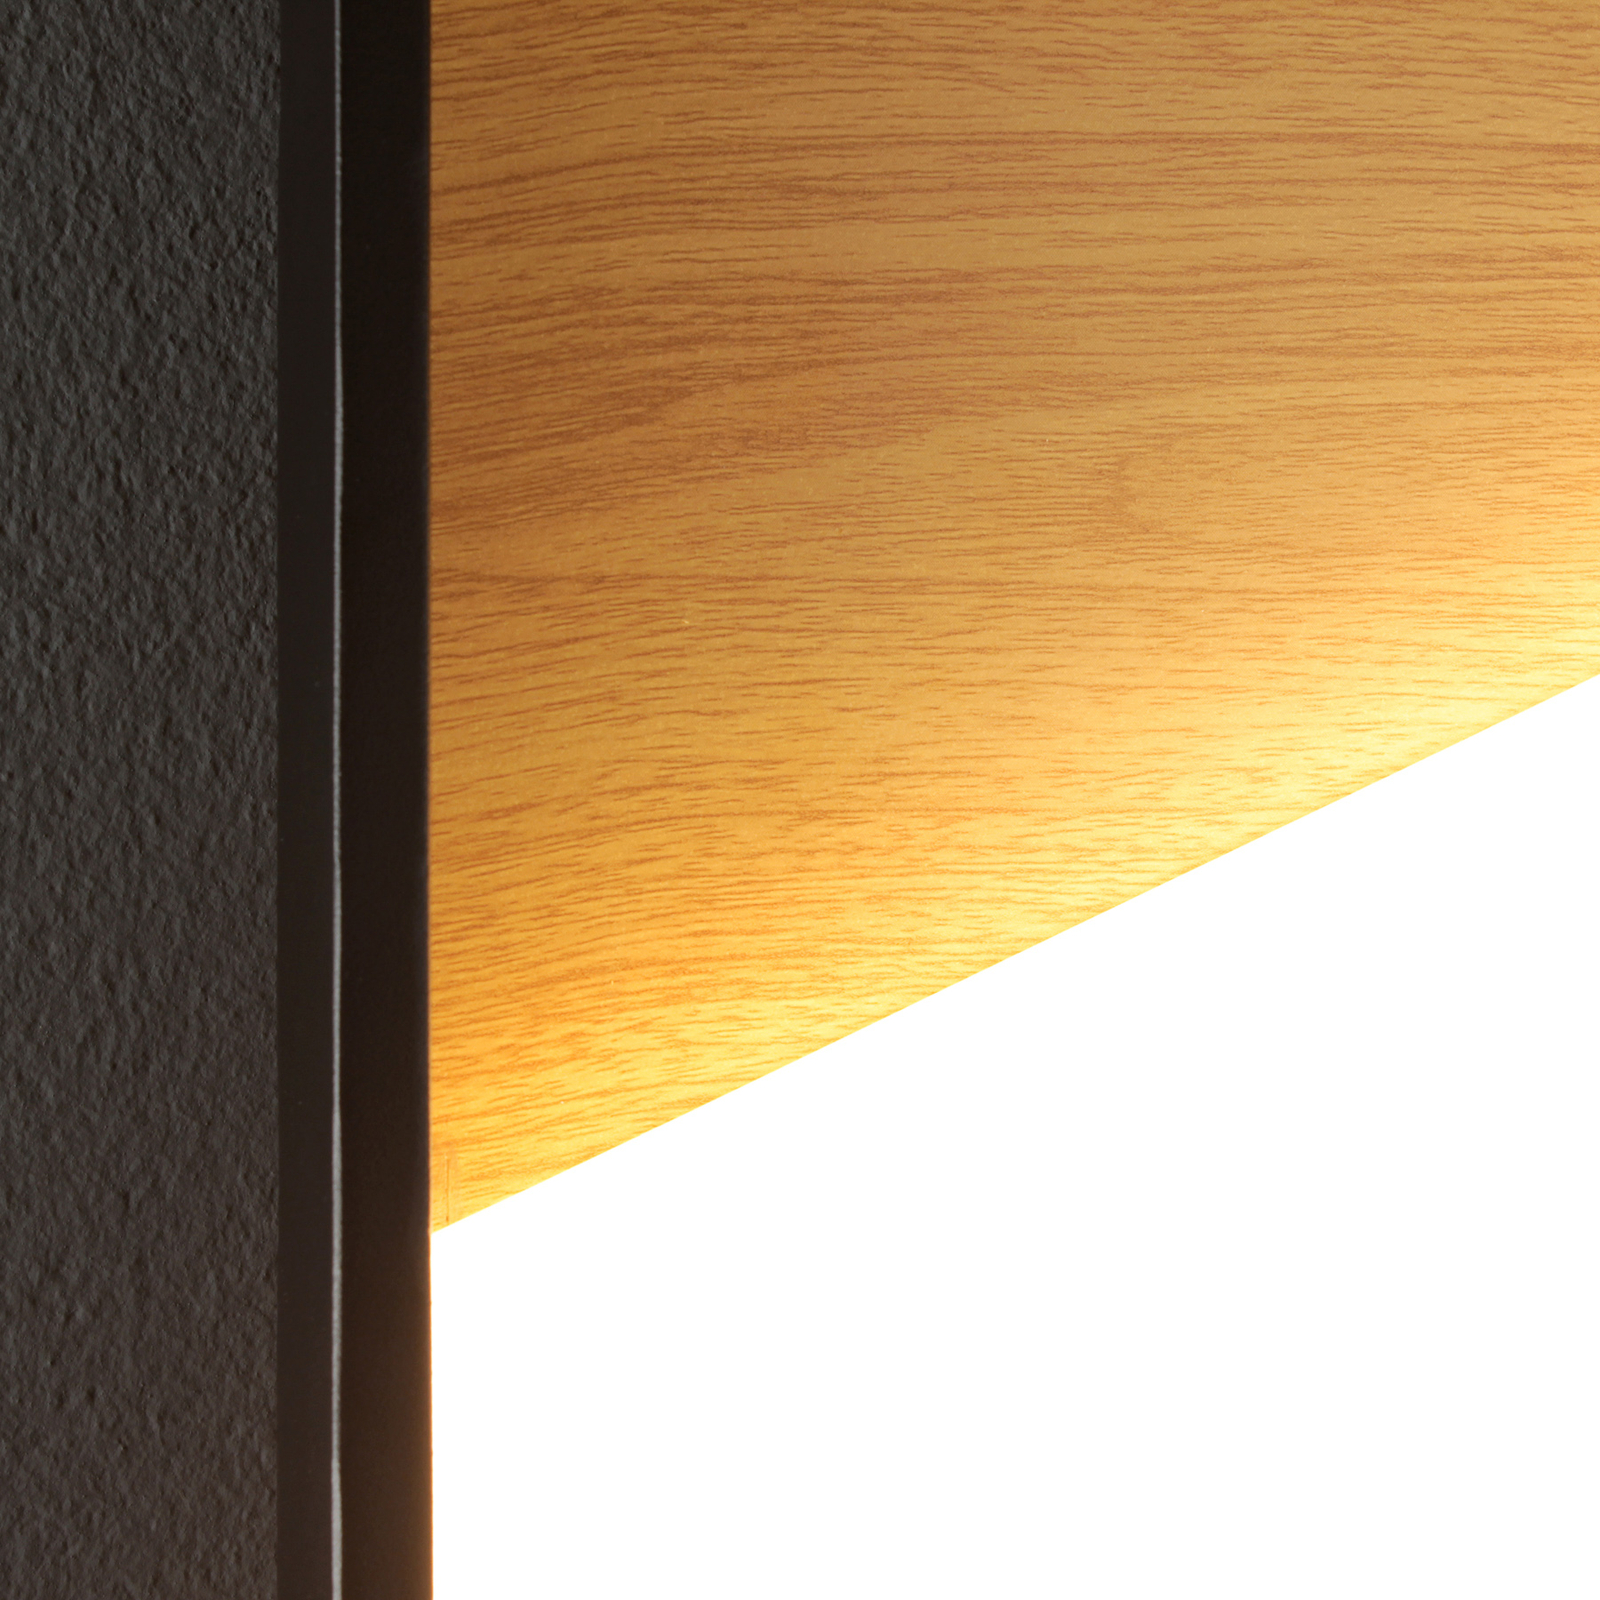 LED-Wandleuchte Vista, holz hell/schwarz, 30 x 30 cm